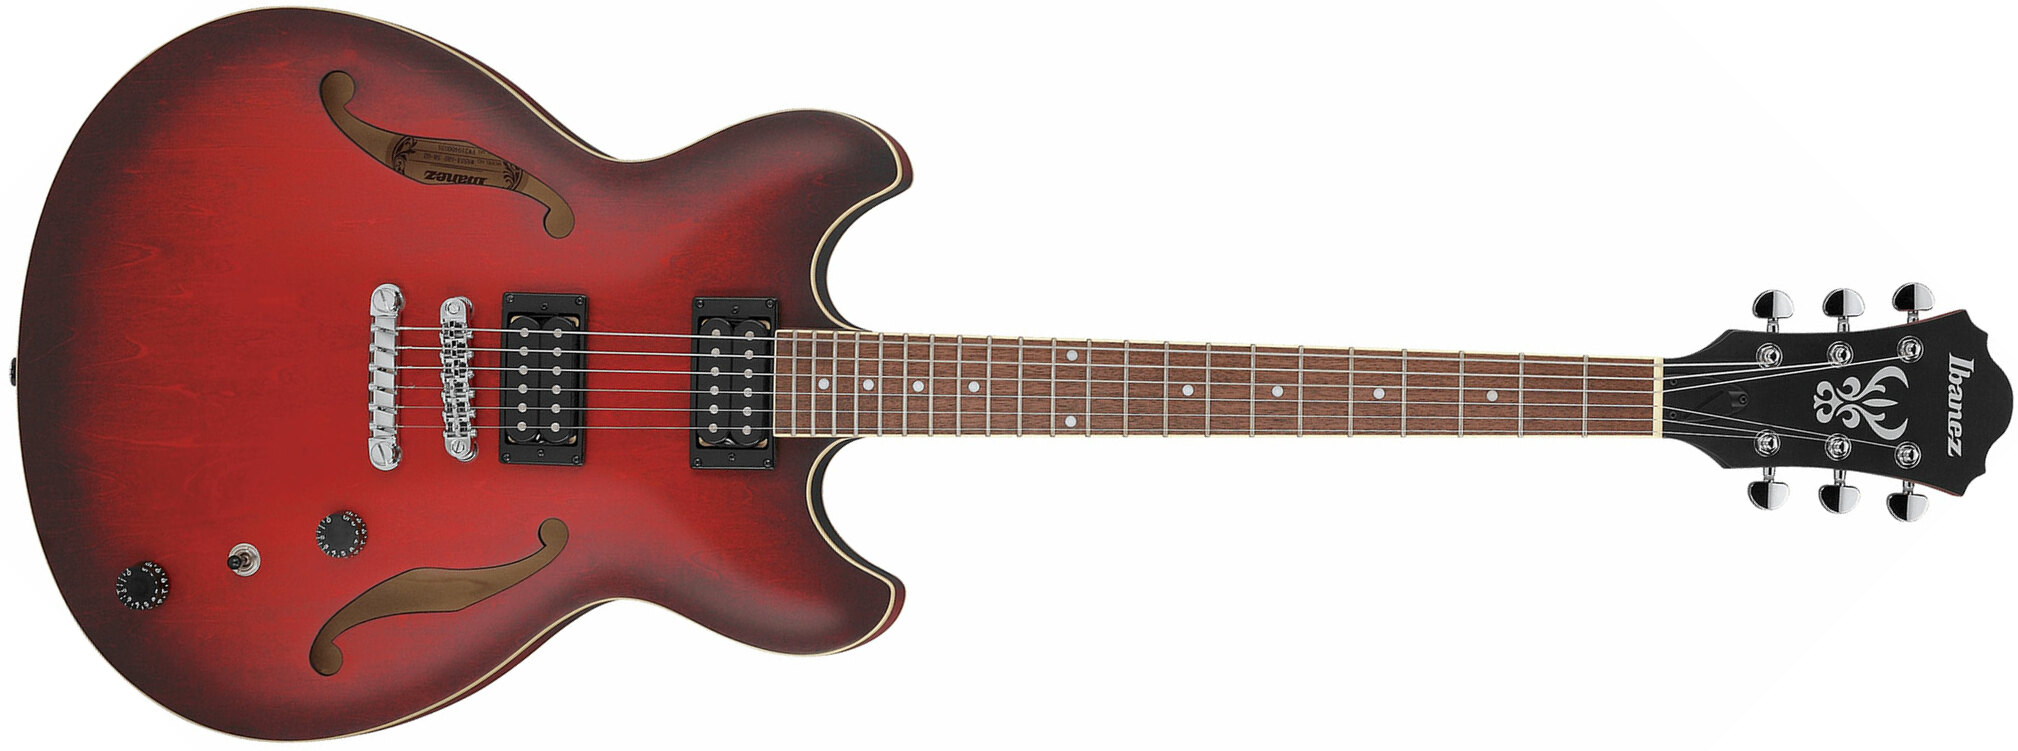 Ibanez As53 Srf Artcore Hh Ht Noy - Sunburst Red Flat - Guitare Électrique 1/2 Caisse - Main picture